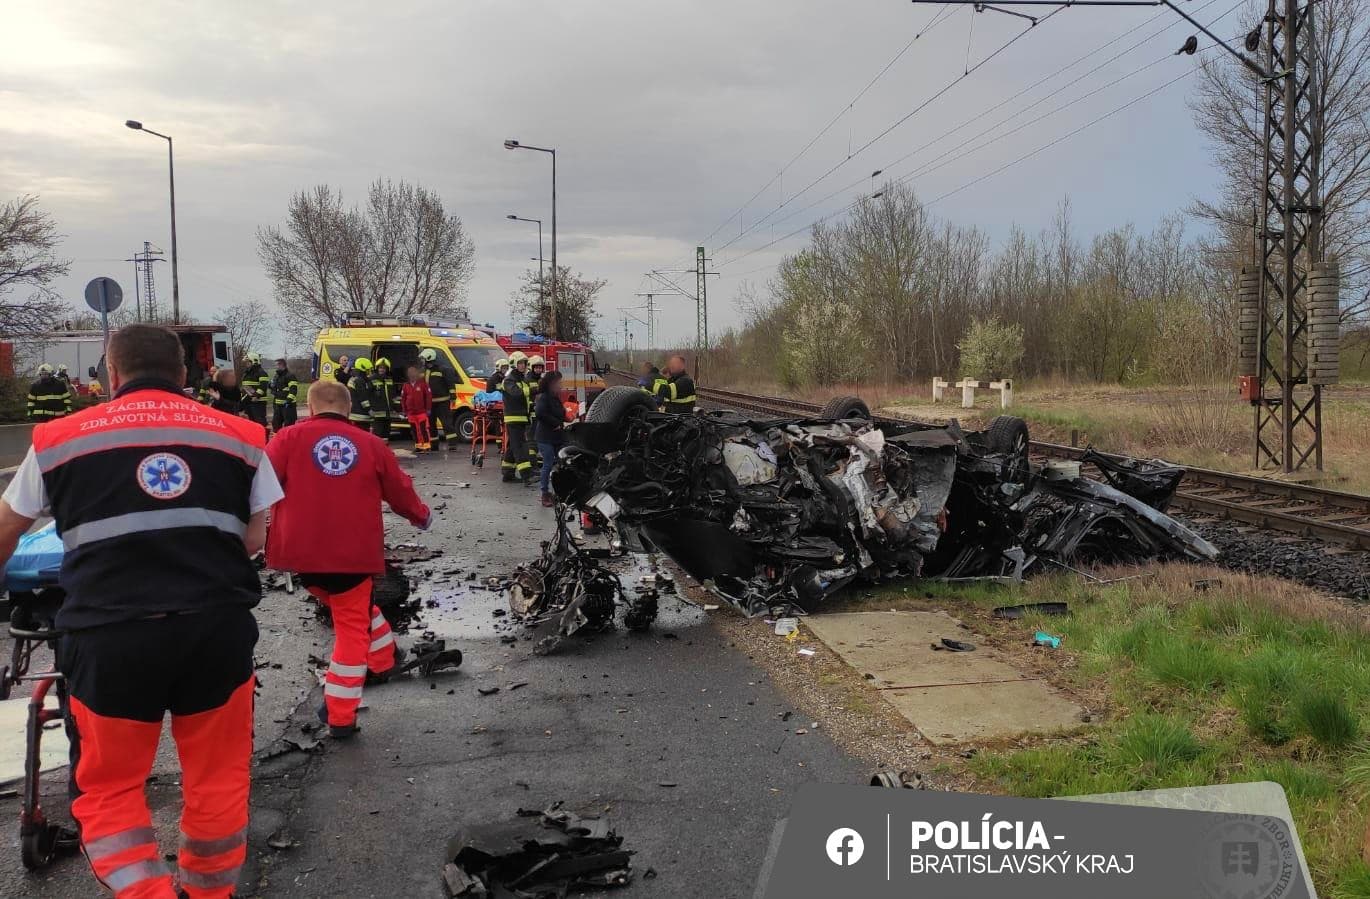 Horrorbaleset a szlovák-magyar határnál: betonpillérnek csapódott egy autó